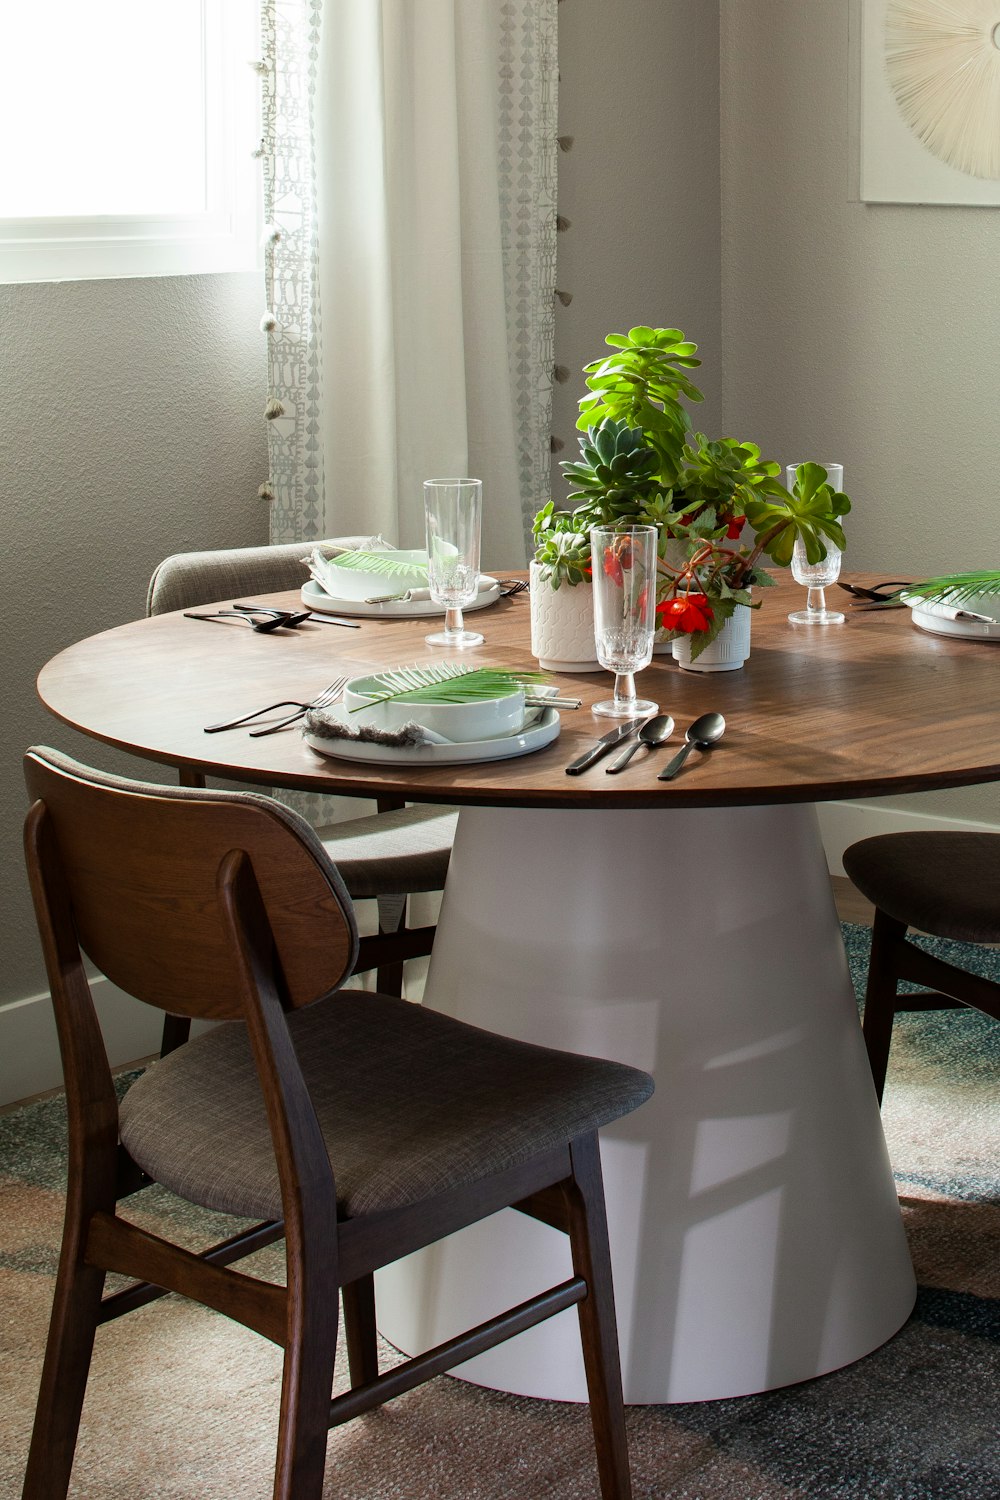 椅子と鉢植えの植物を備えたダイニングルームのテーブル